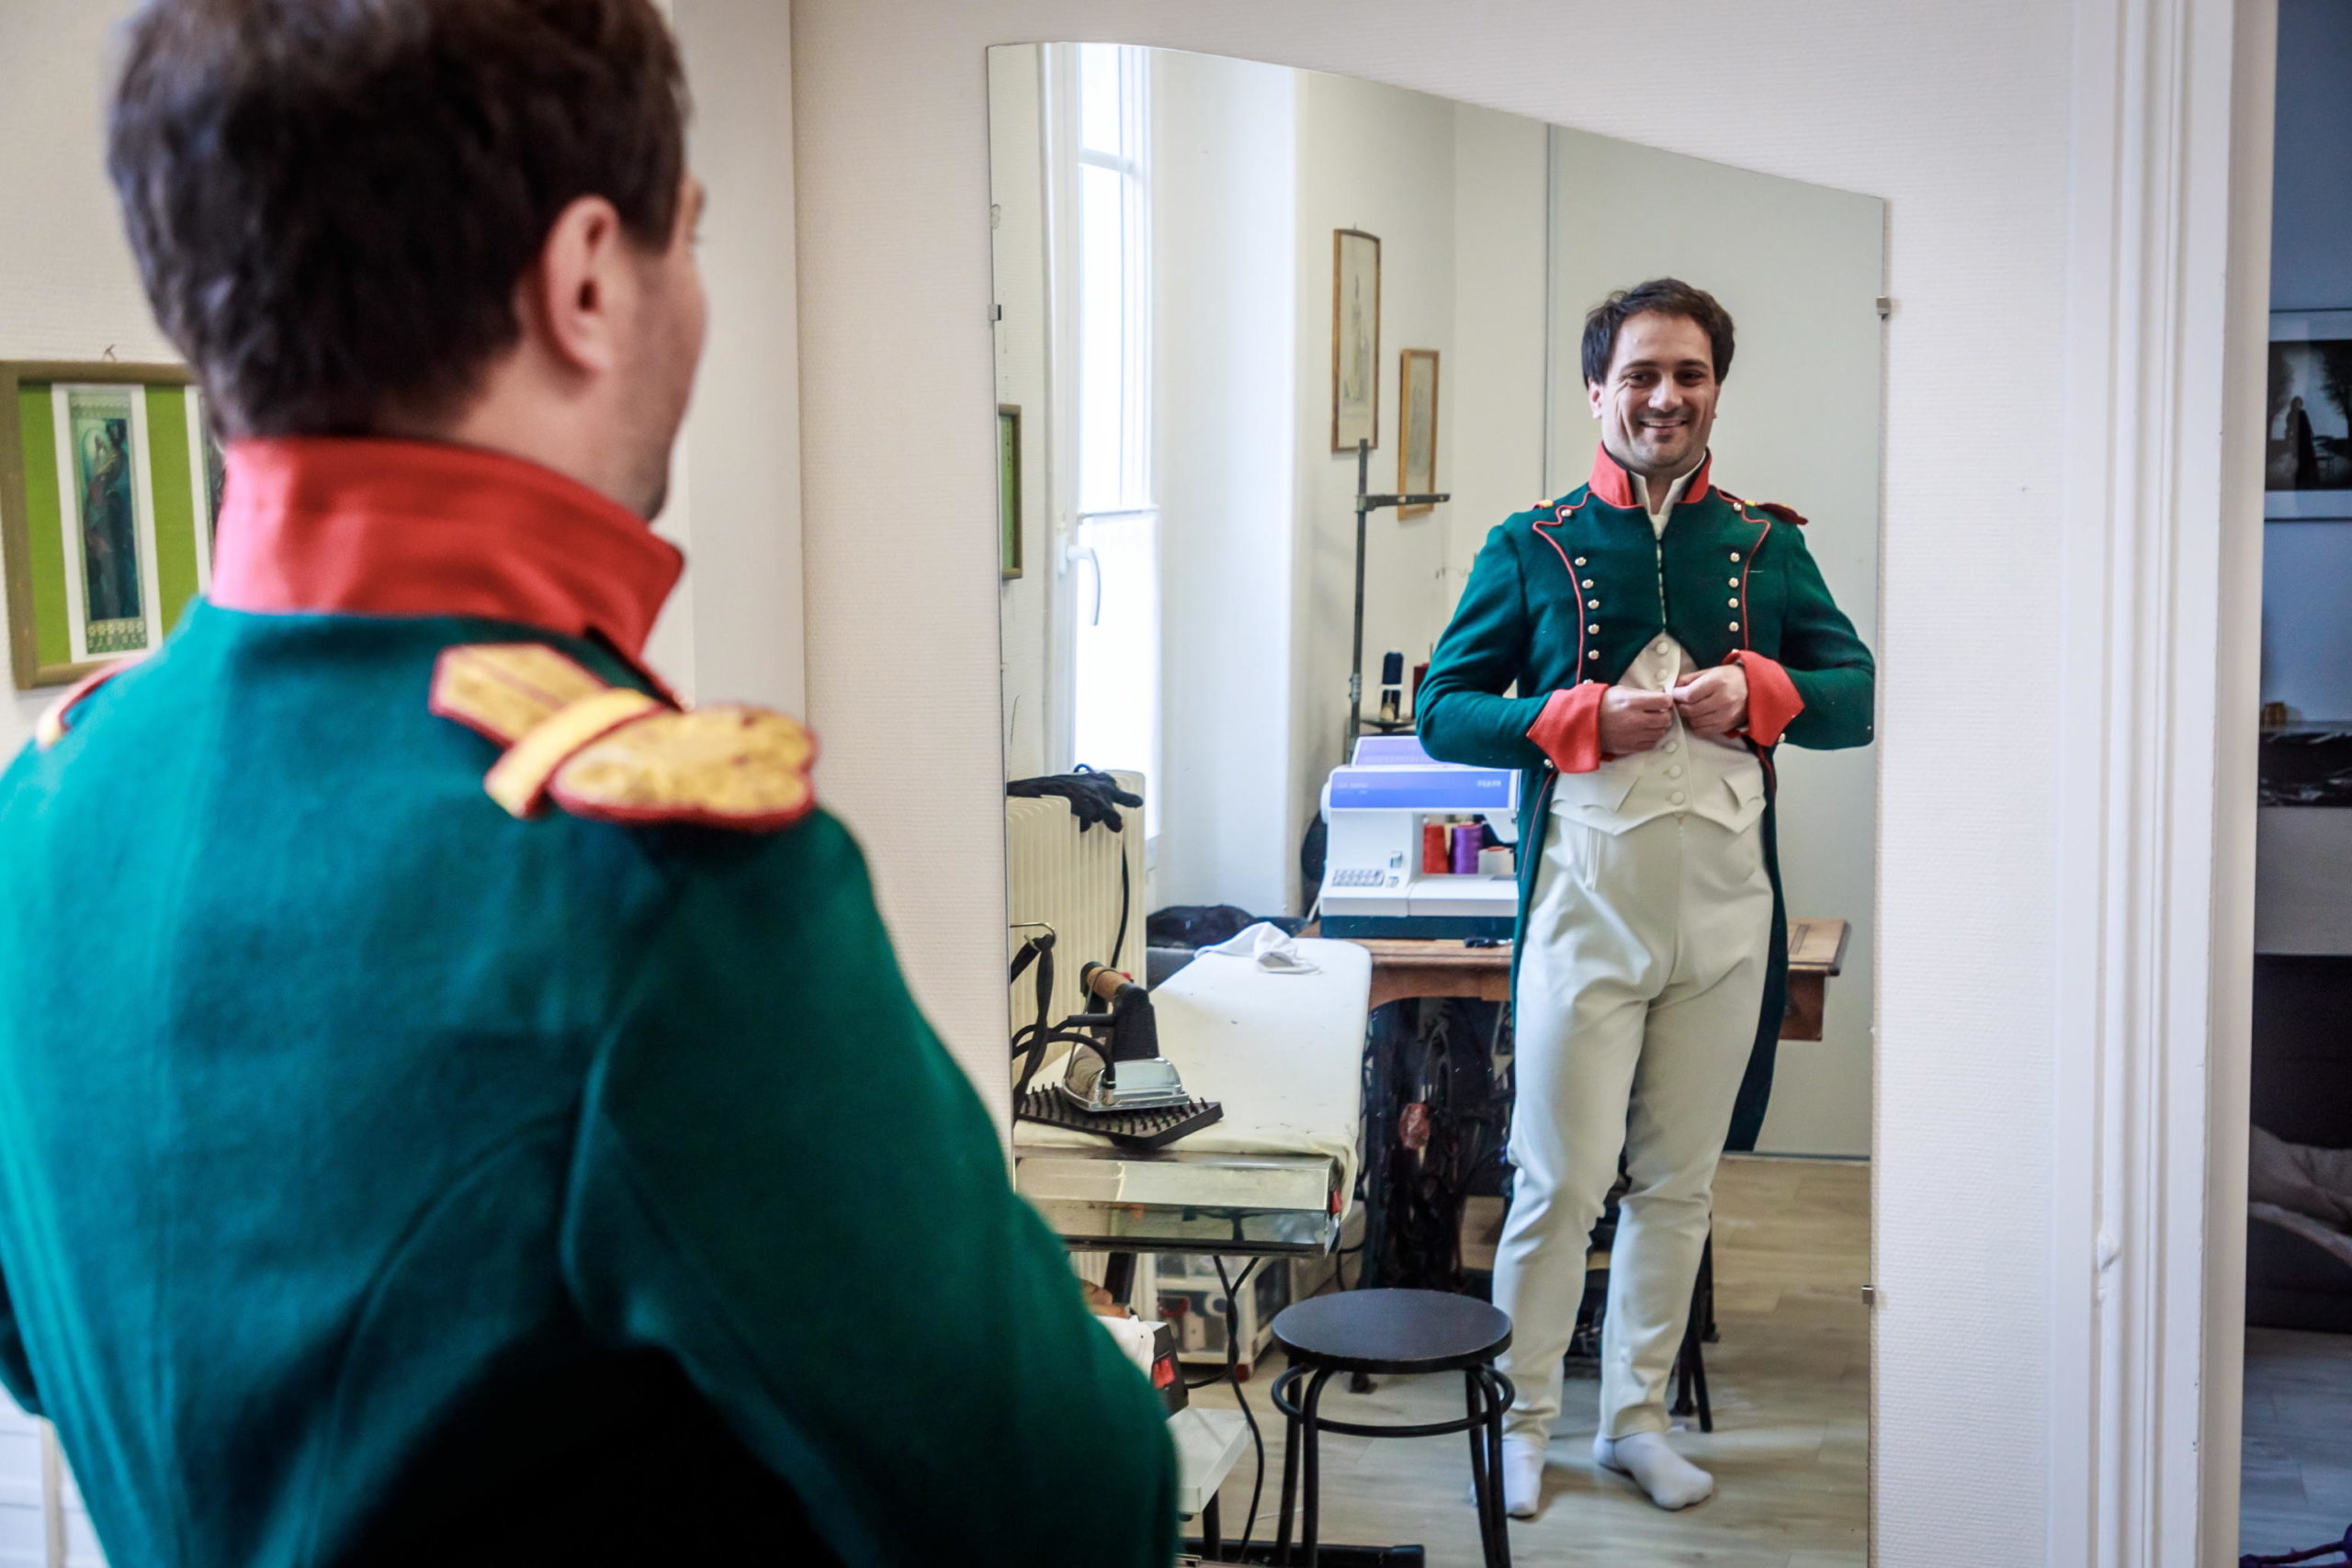 La prova vestito di un professore che interpreterà Napoleone in un film